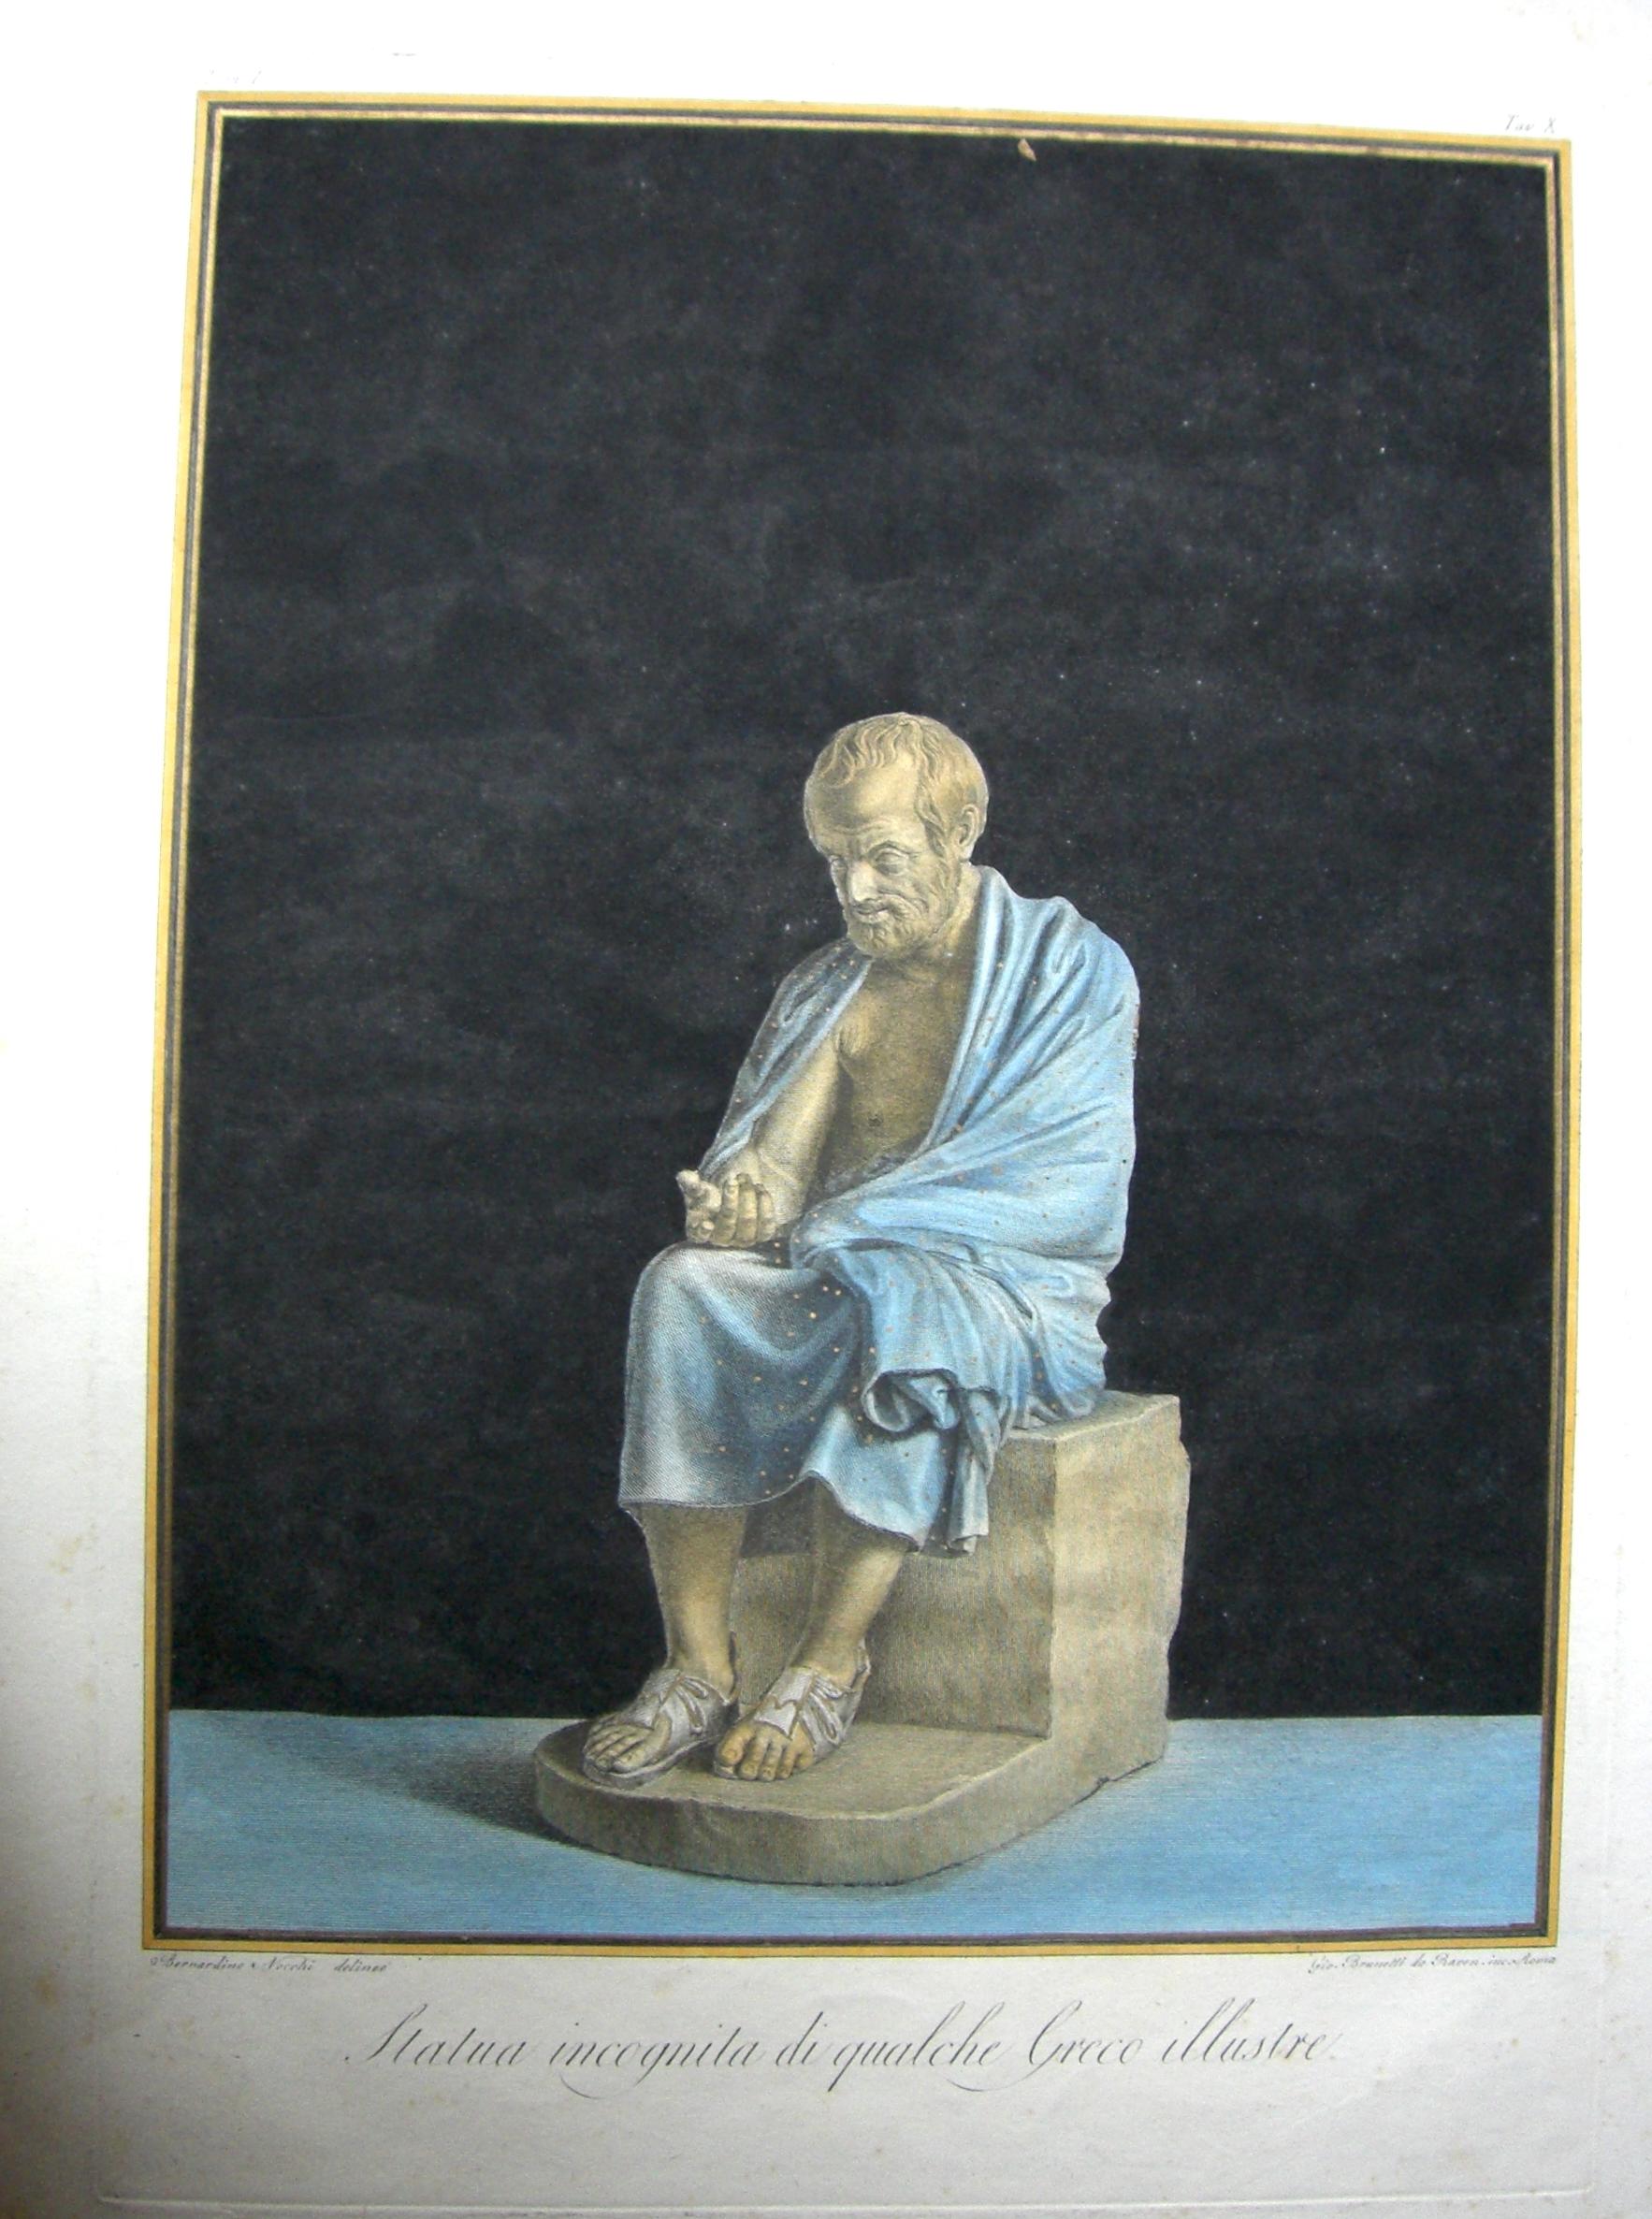 Portrait Print Giò. Brunet - Statue inconnue d'un important homme grec - gravure à l'eau-forte de Gi. Brunet - 1794